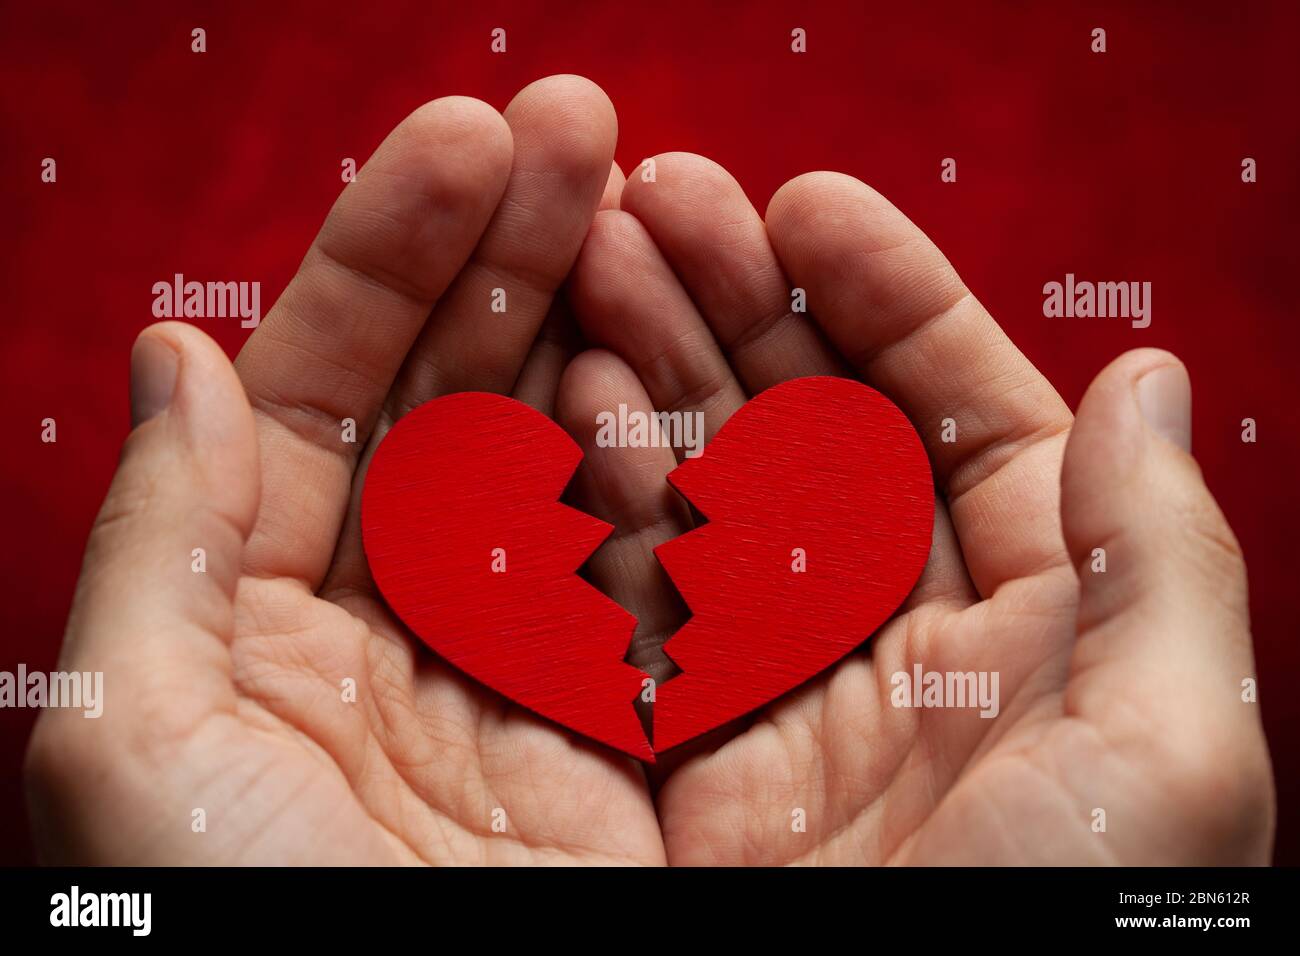 Der Mensch hält ein gebrochenes Herz in seinen Händen. Riss in das rote Herz, die Beziehung zu brechen. Stockfoto